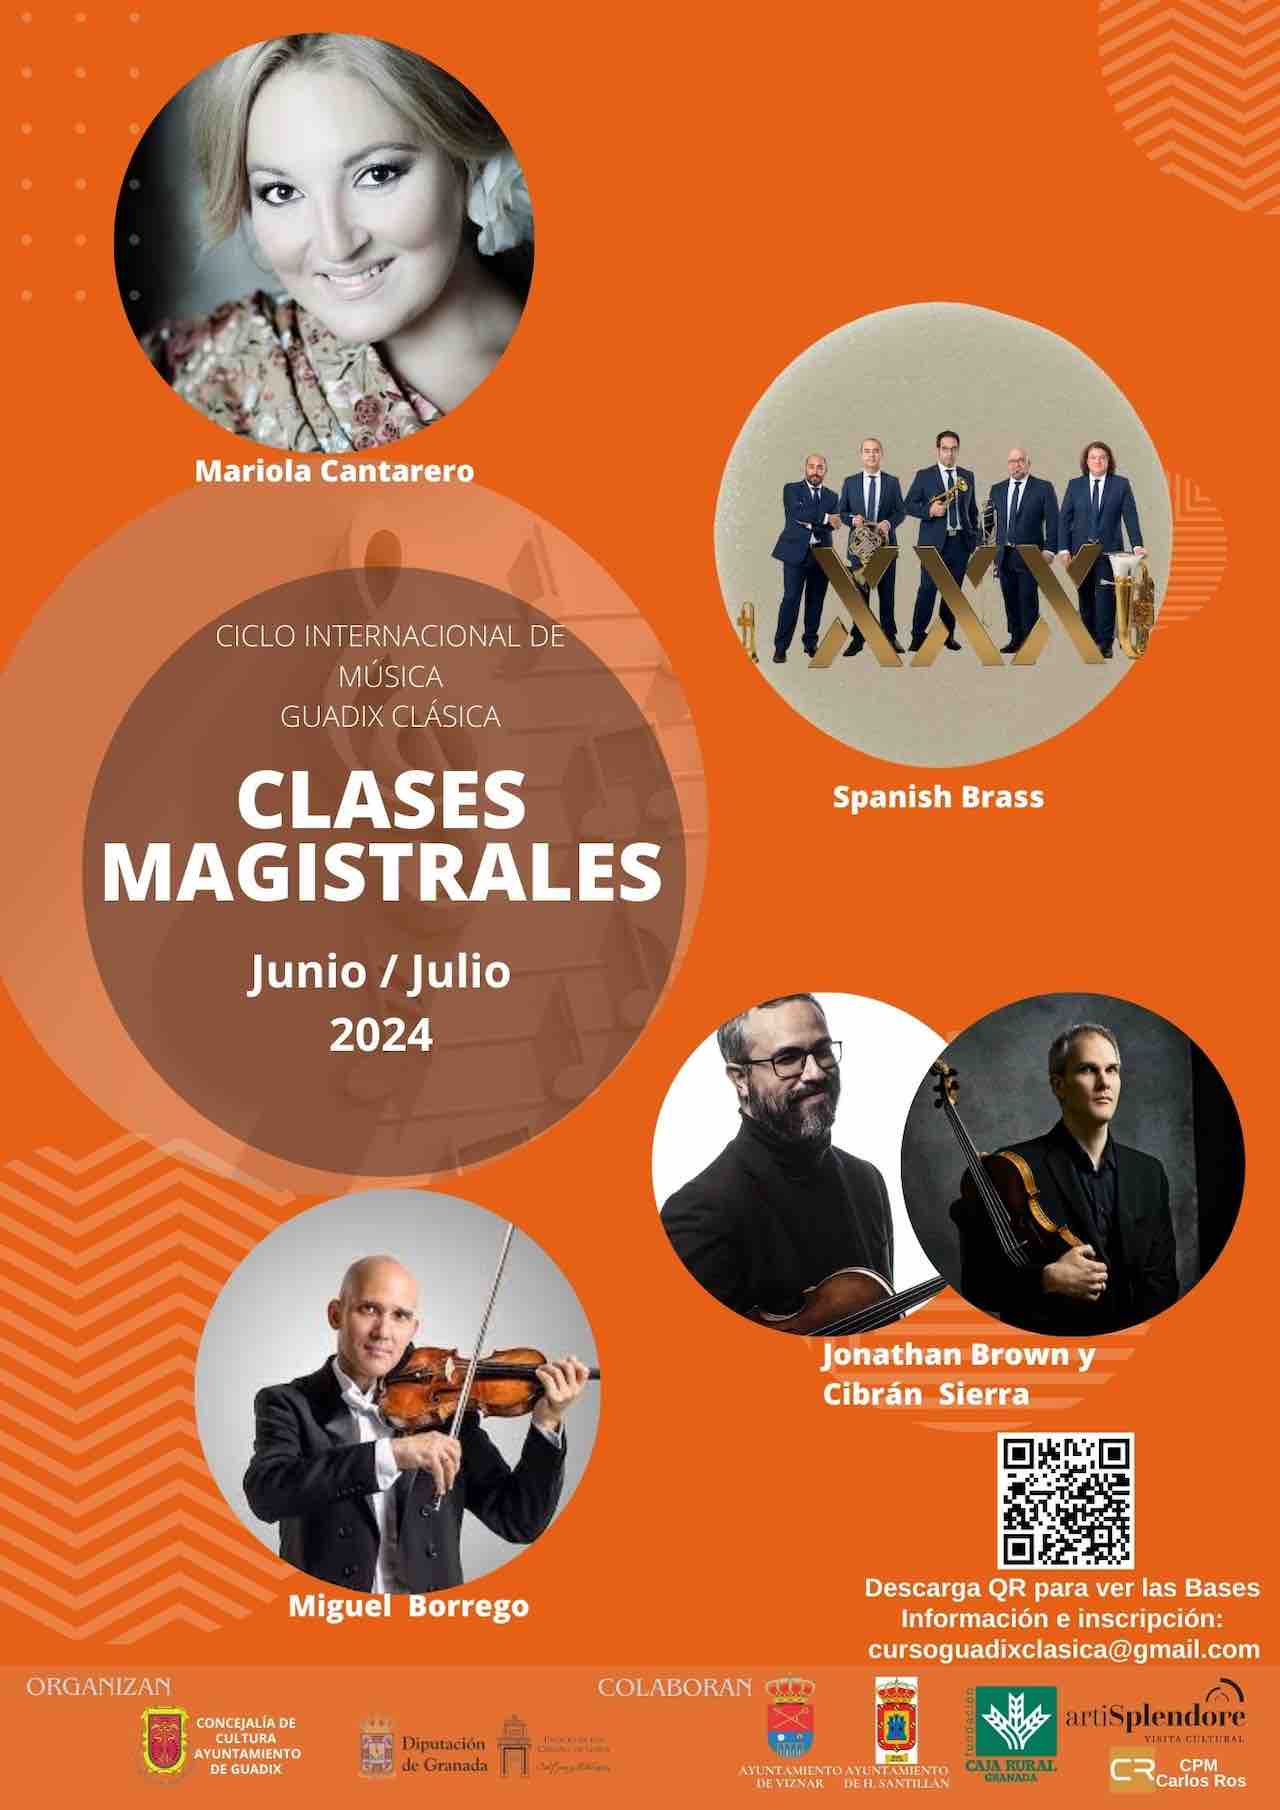 Guadix clásica clases magistrales